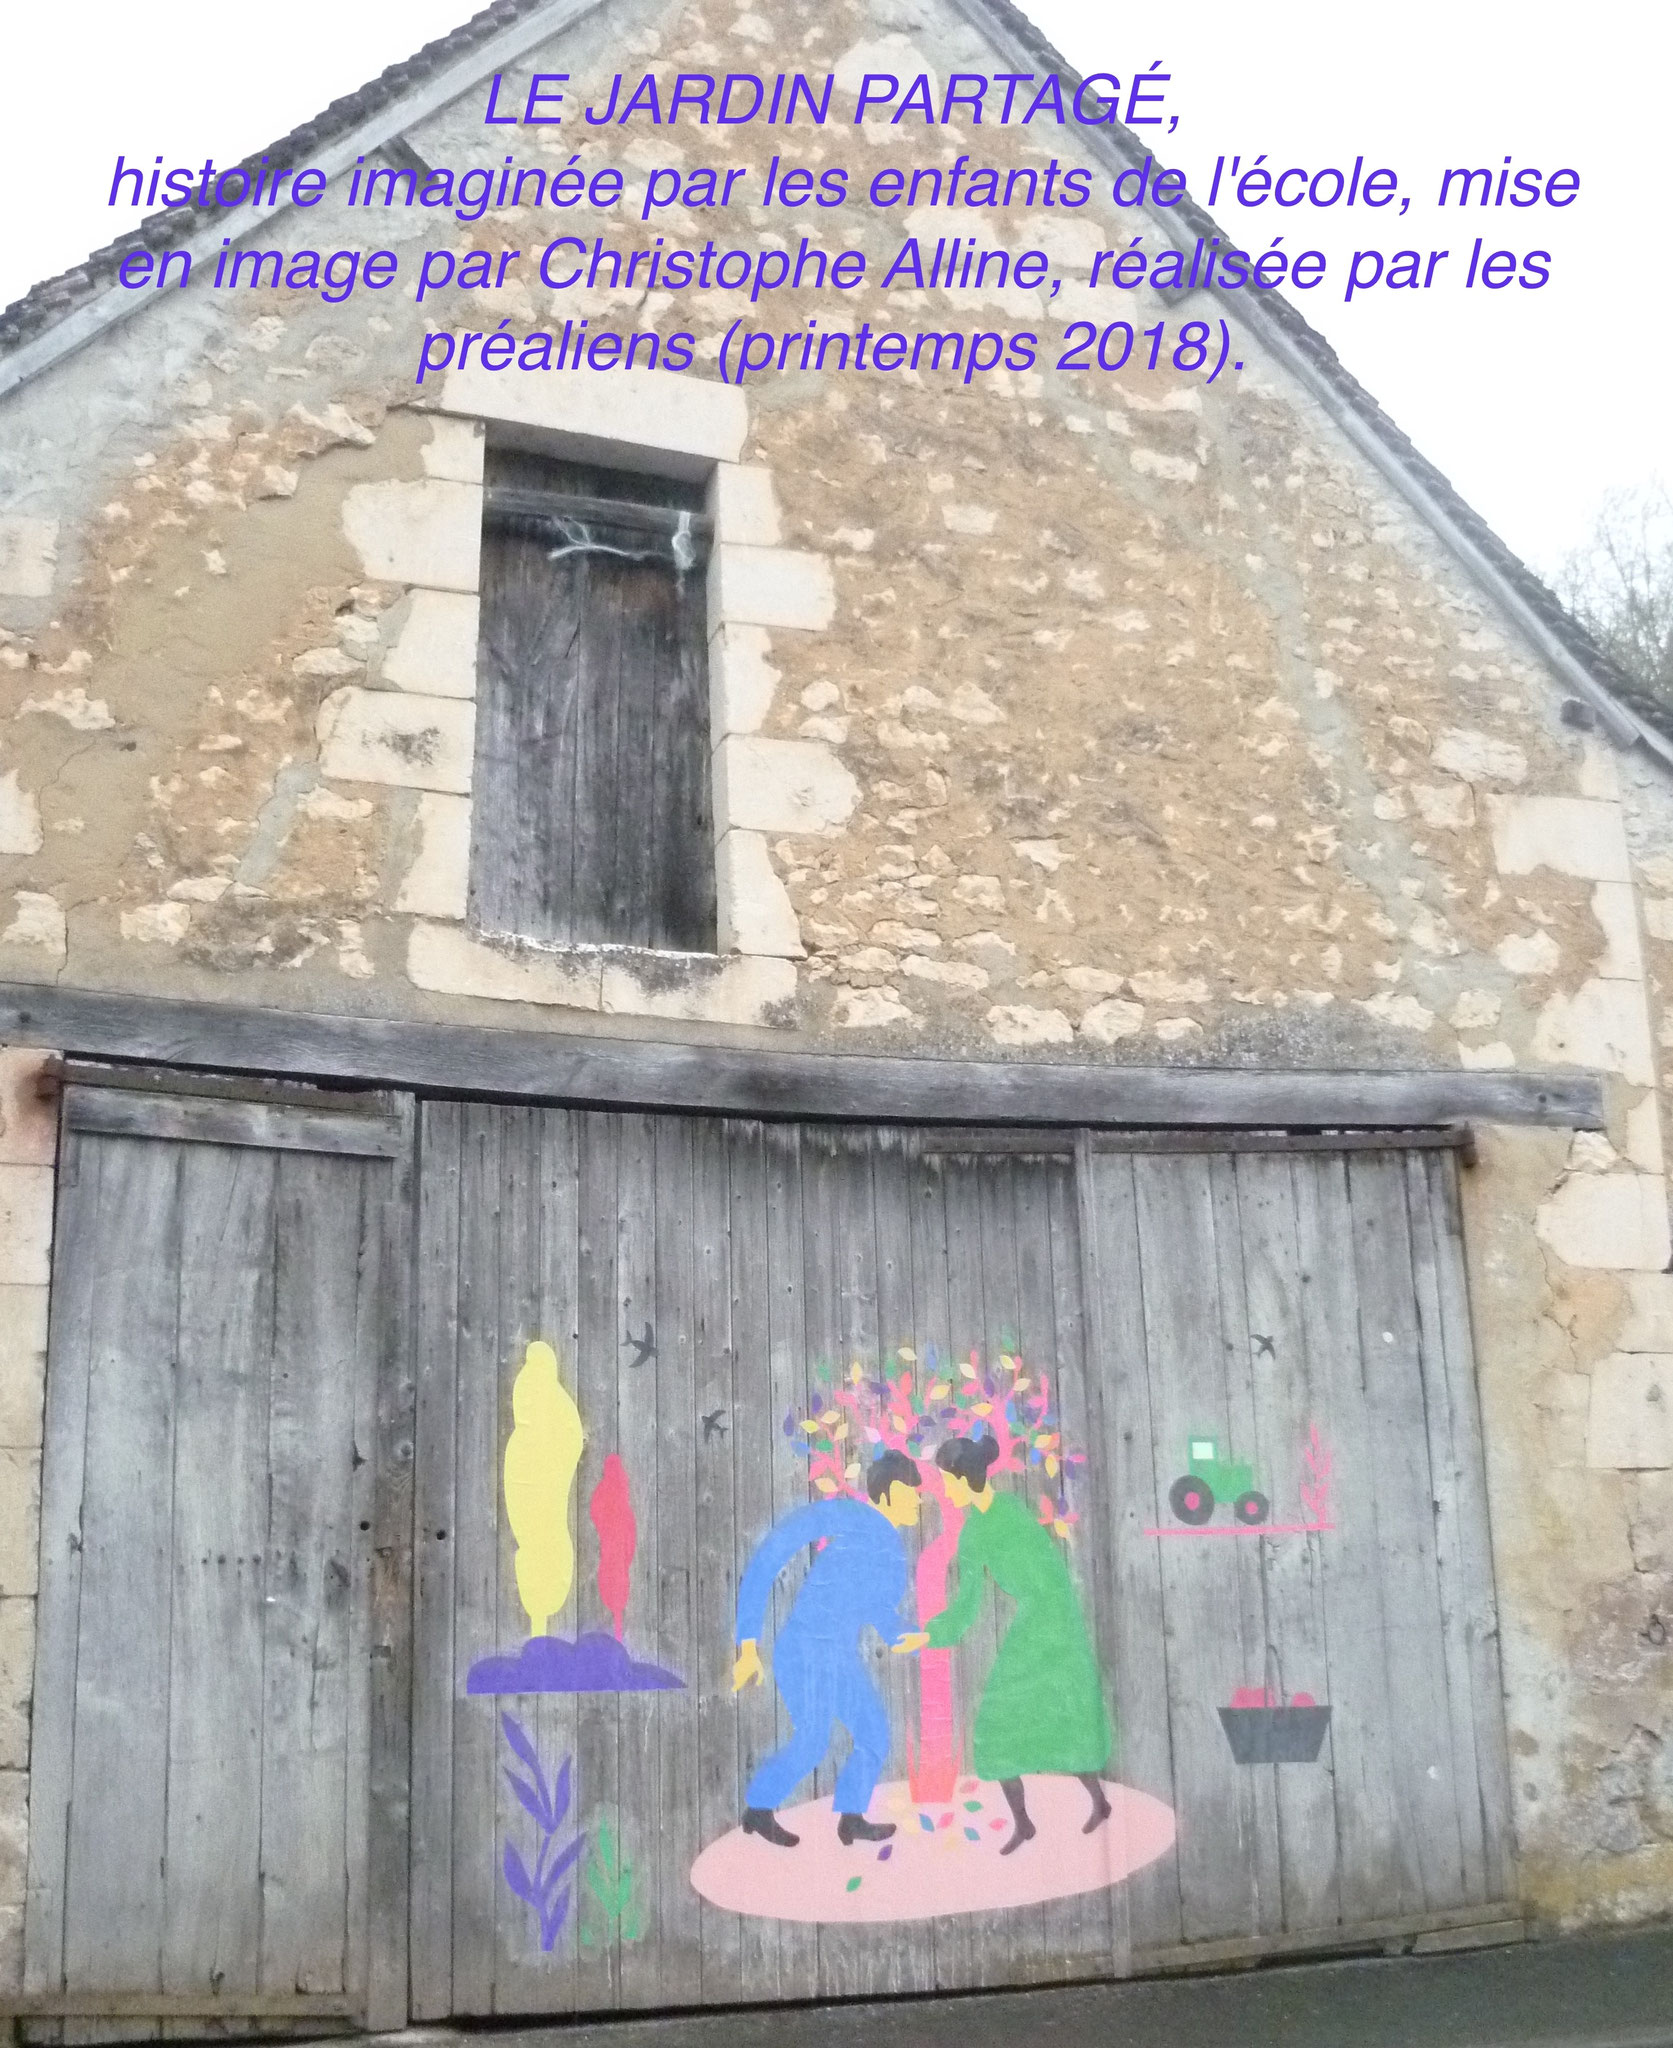 LE JARDIN PARTAGÉ, histoire imaginée par les enfants de l'école, mise en image par Christophe Alline, réalisée par les préaliens (printemps 2018).